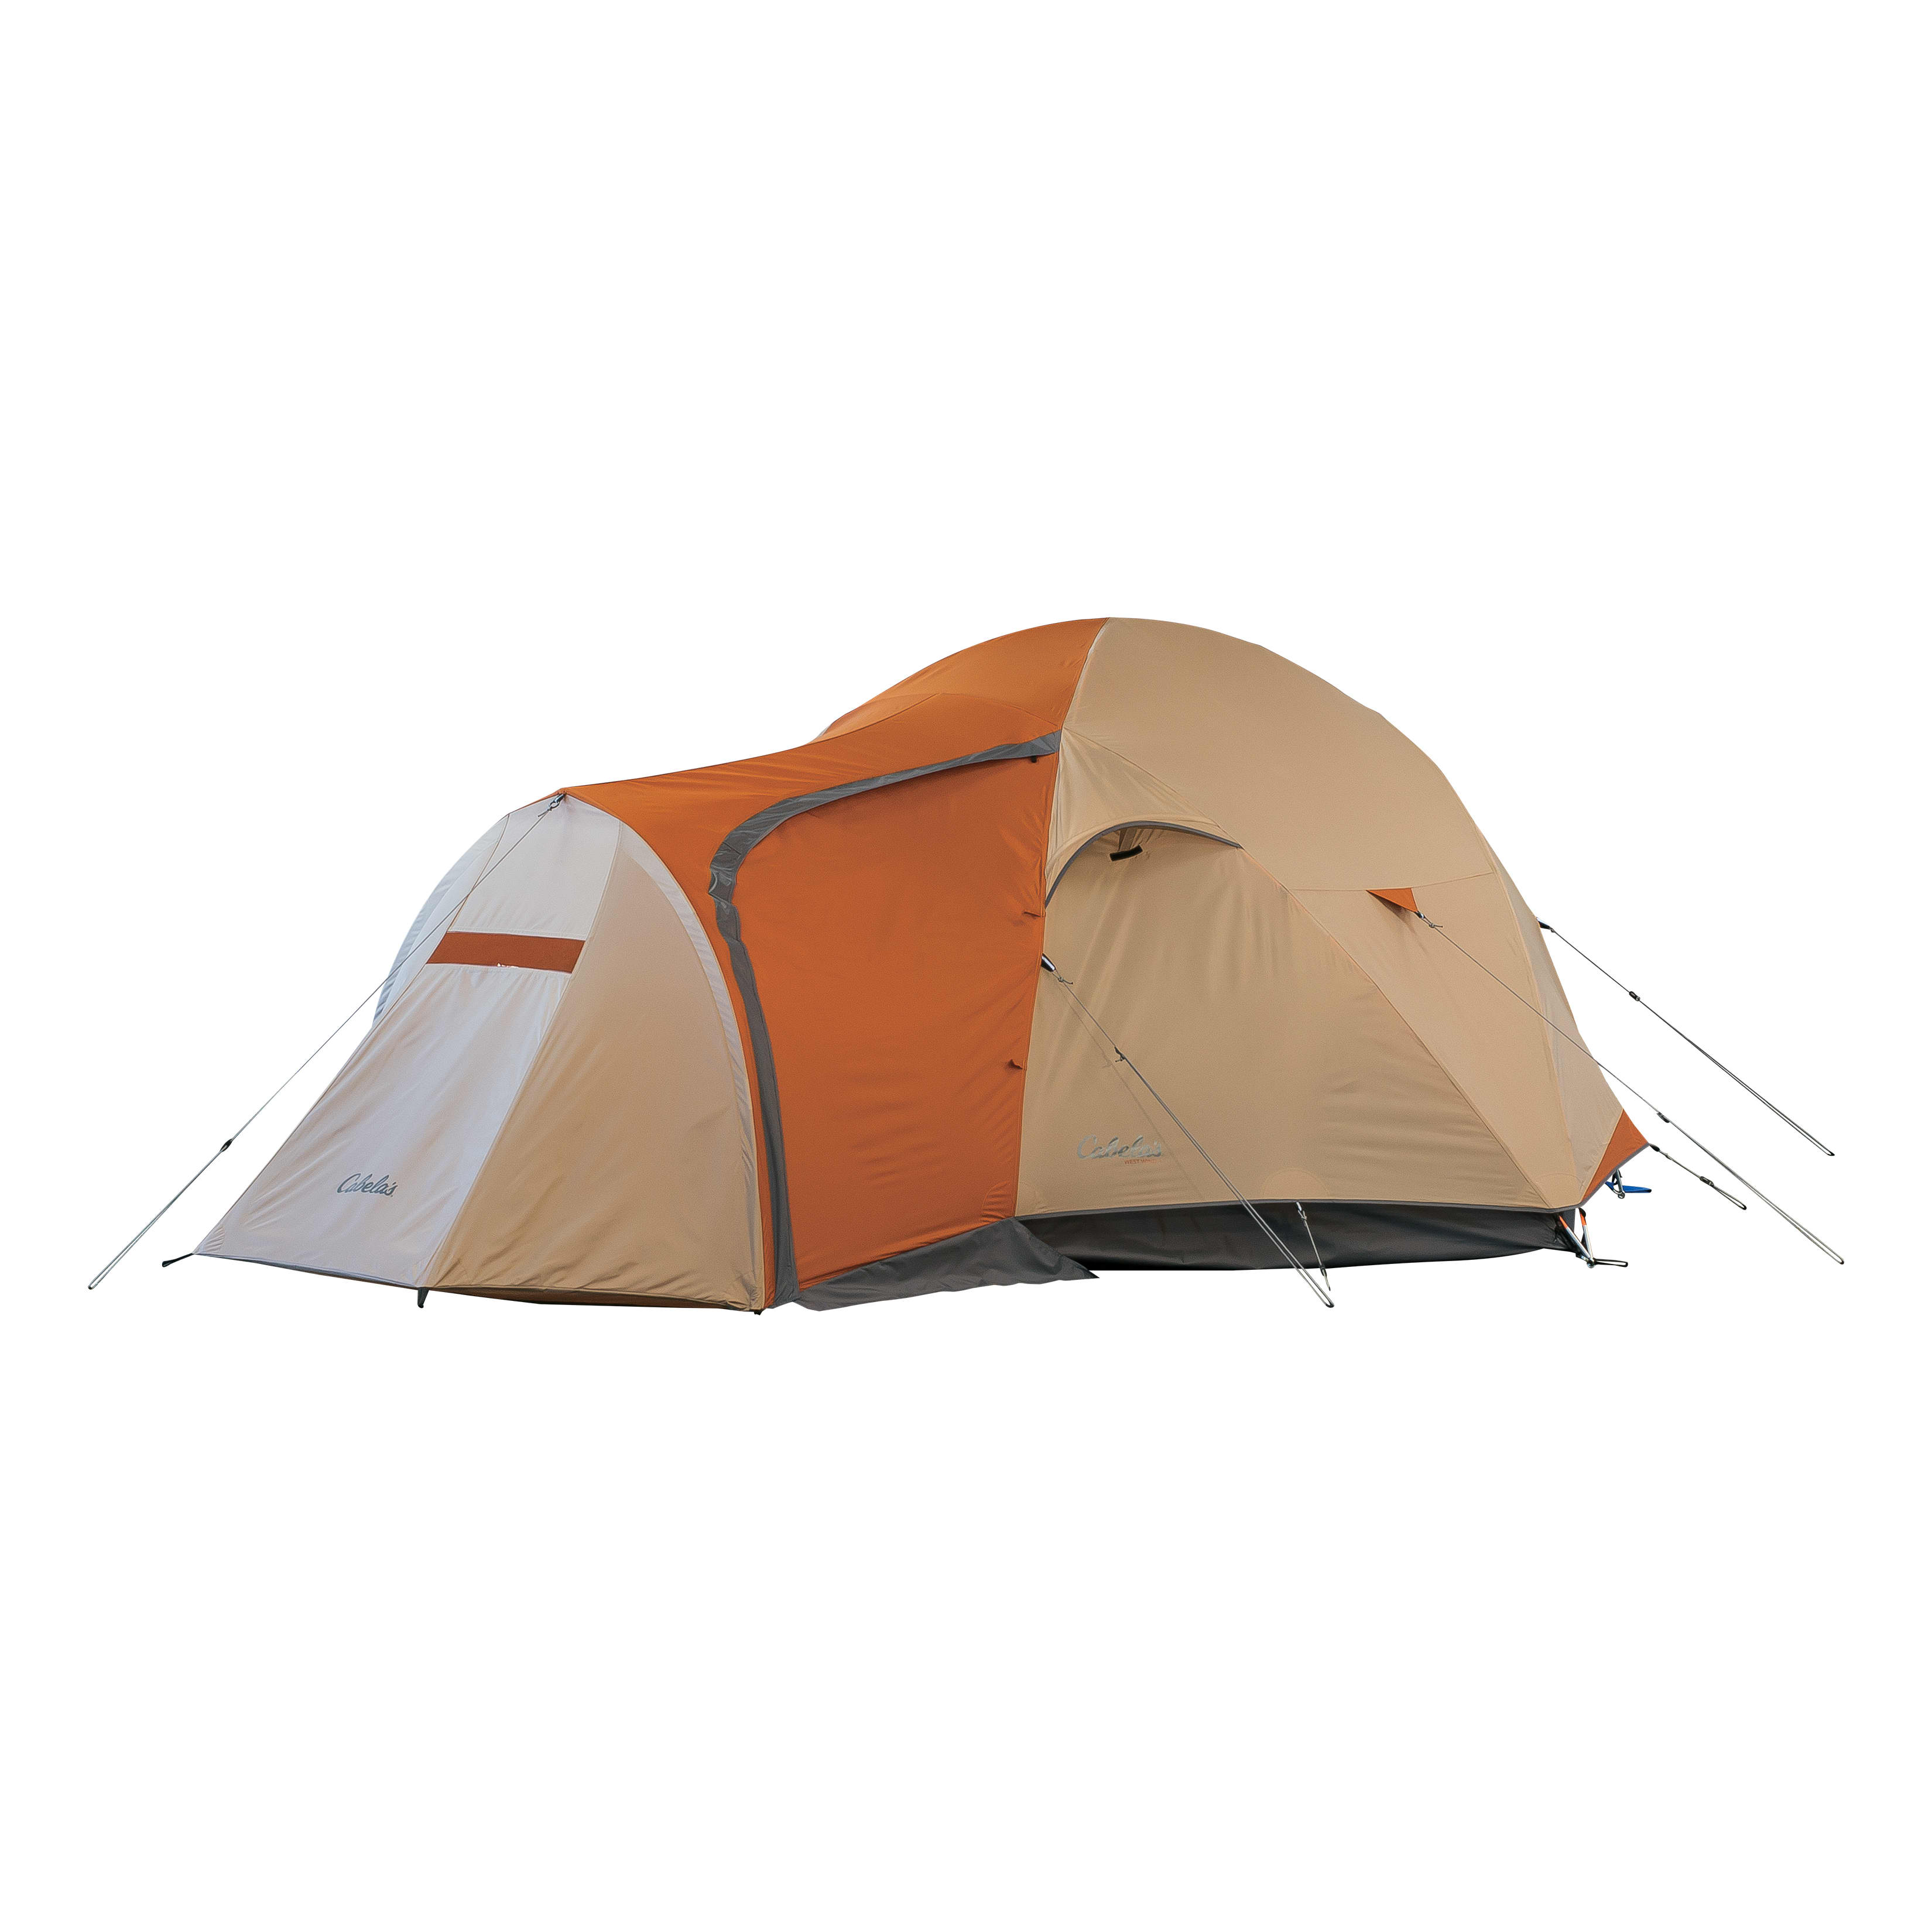 Cabela’s West Wind Dome Tent - Cabelas - CABELA'S - Family Tents